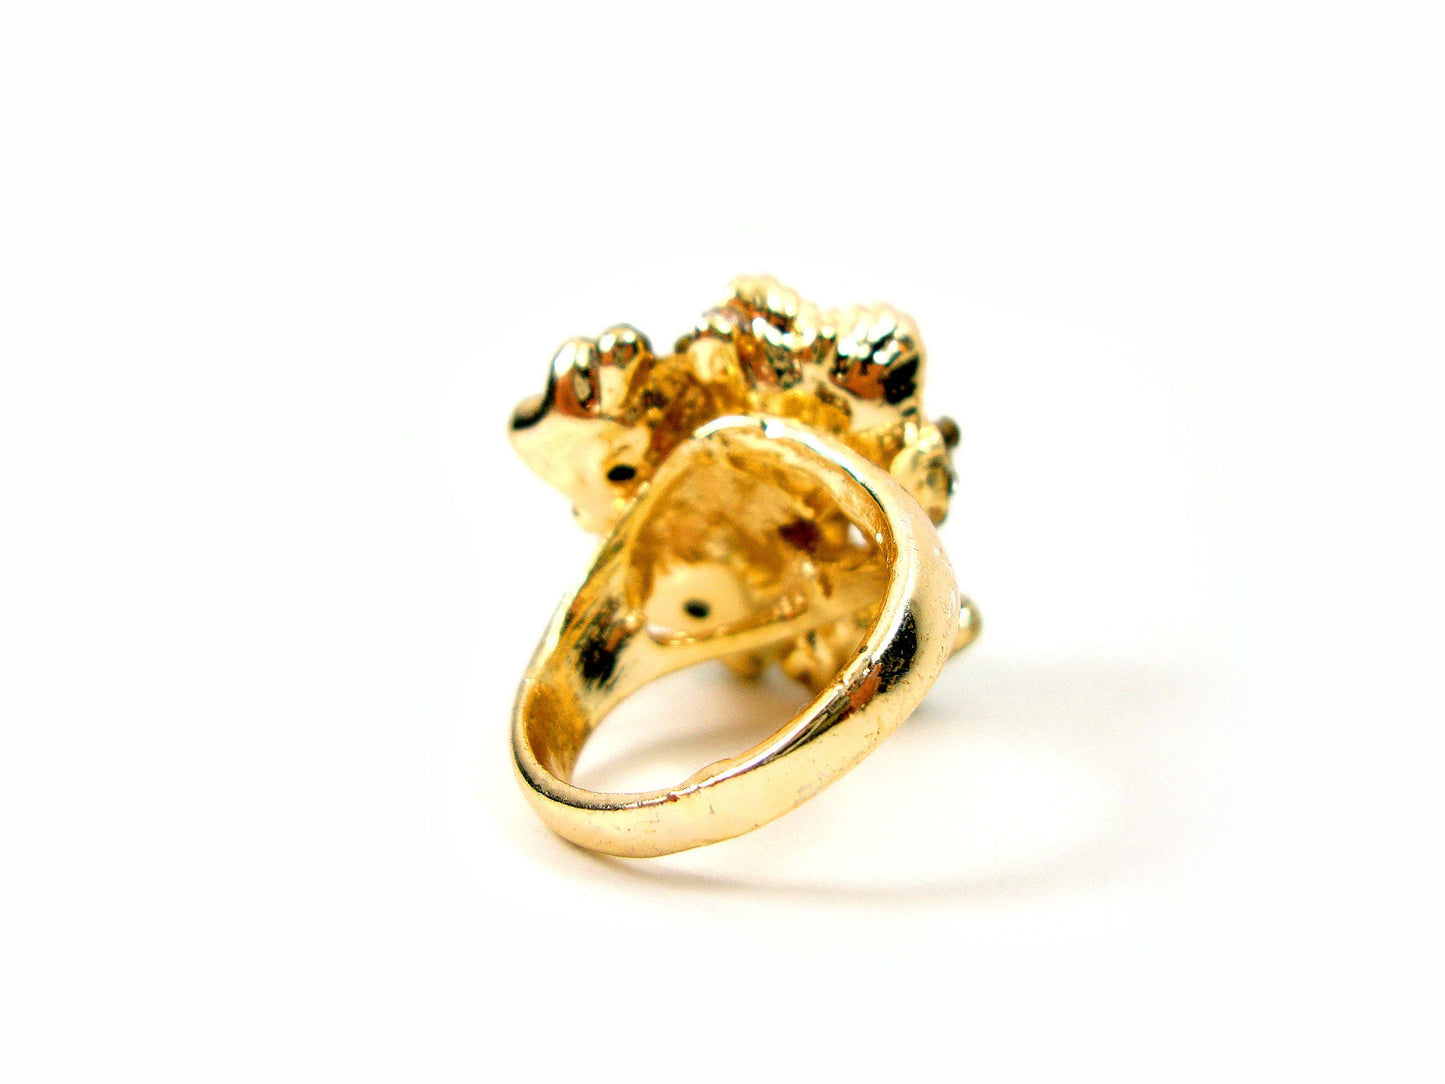 Byzantinischer mehrfarbiger schwarzer und grauer silberfarbener Kristallstein Moderner griechischer Ring, ethnischer Ring, türkischer Vintage-Ring, traditioneller Schmuck